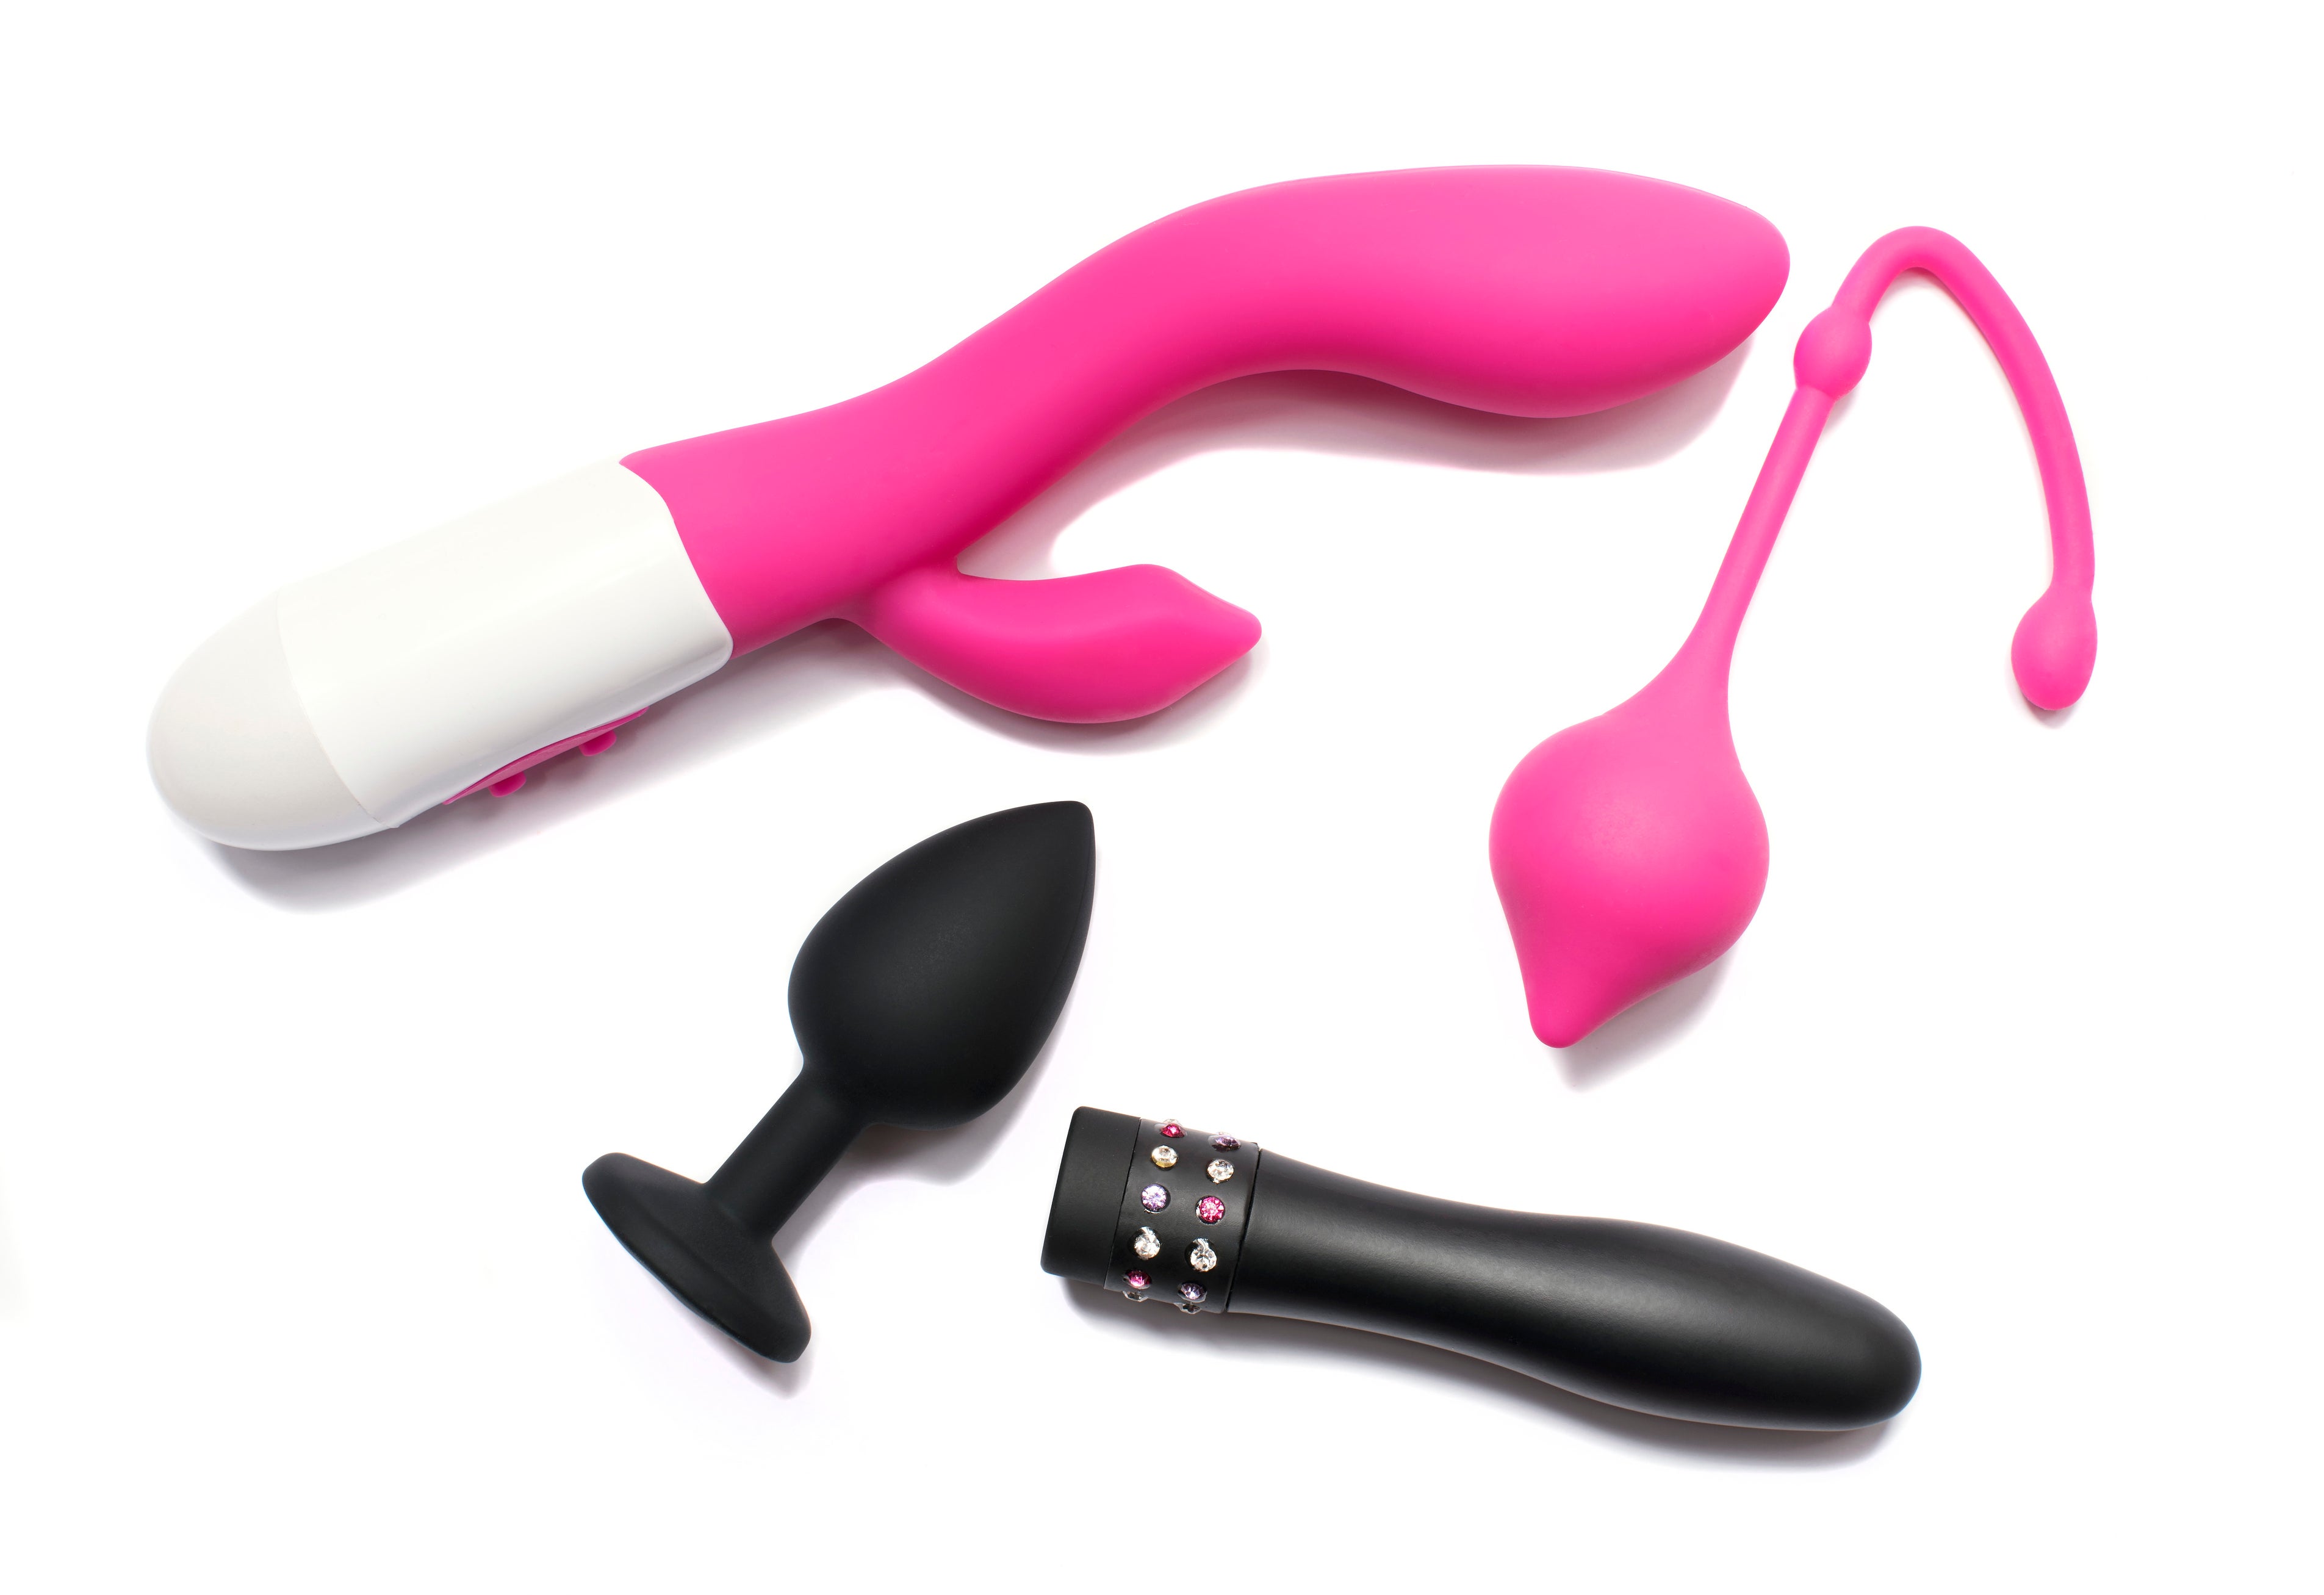 godtgørelse varme Vask vinduer 10 best online sex toy stores for shameless shopping at home | indy100